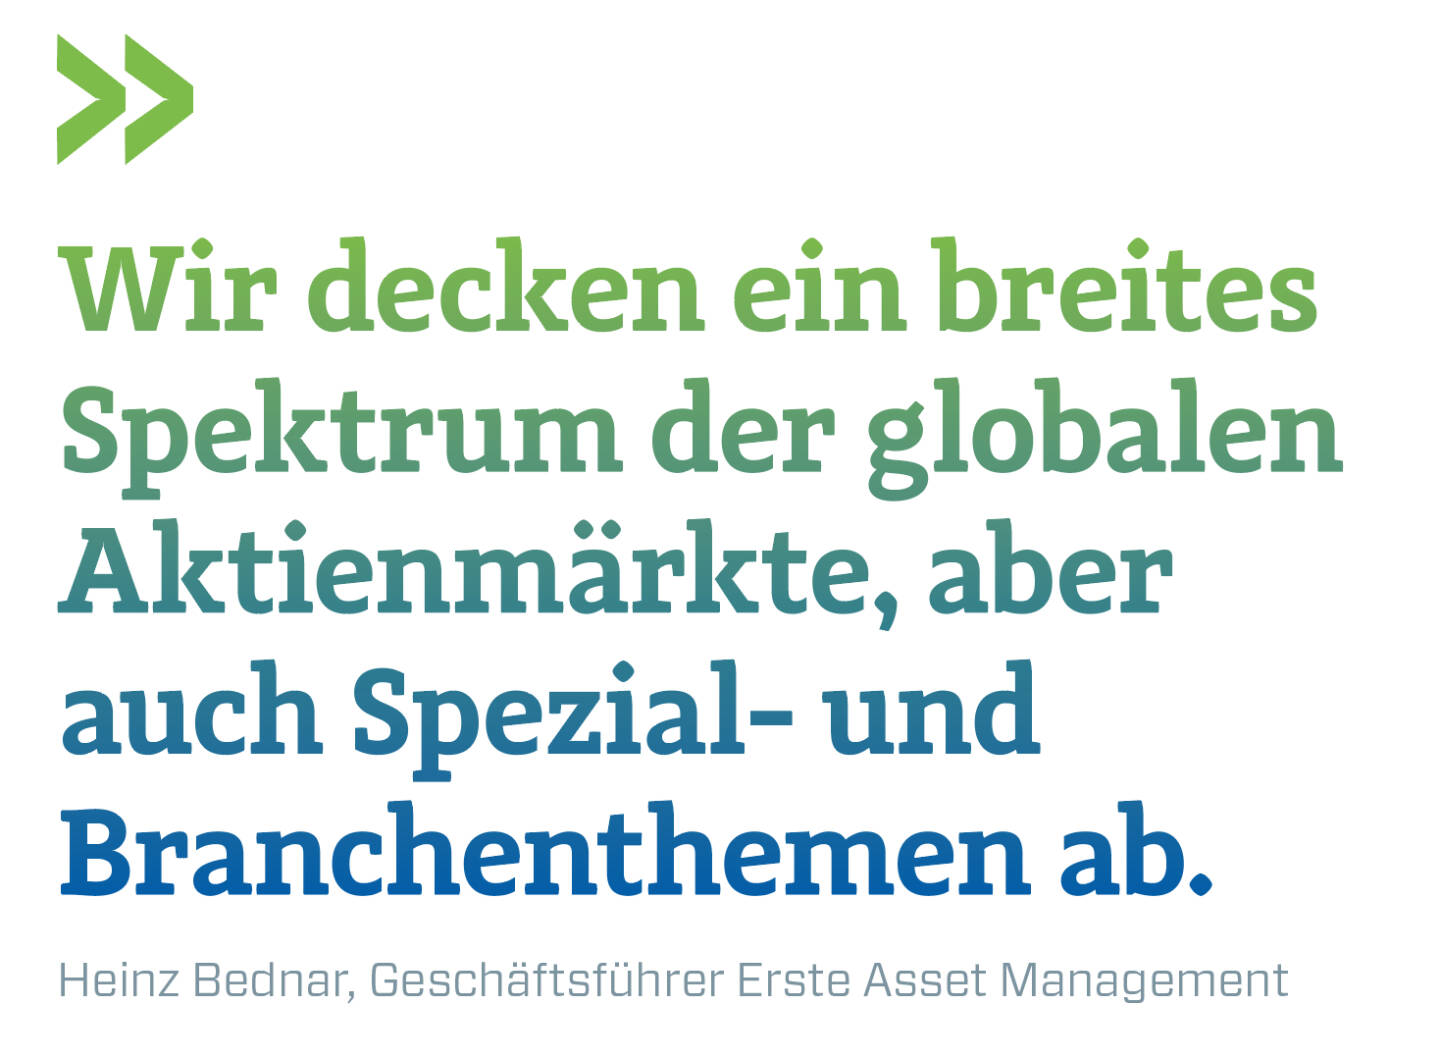 Wir decken ein breites Spektrum der globalen Aktienmärkte, aber auch Spezial- und Branchenthemen ab.
Heinz Bednar, Geschäftsführer Erste Asset Management